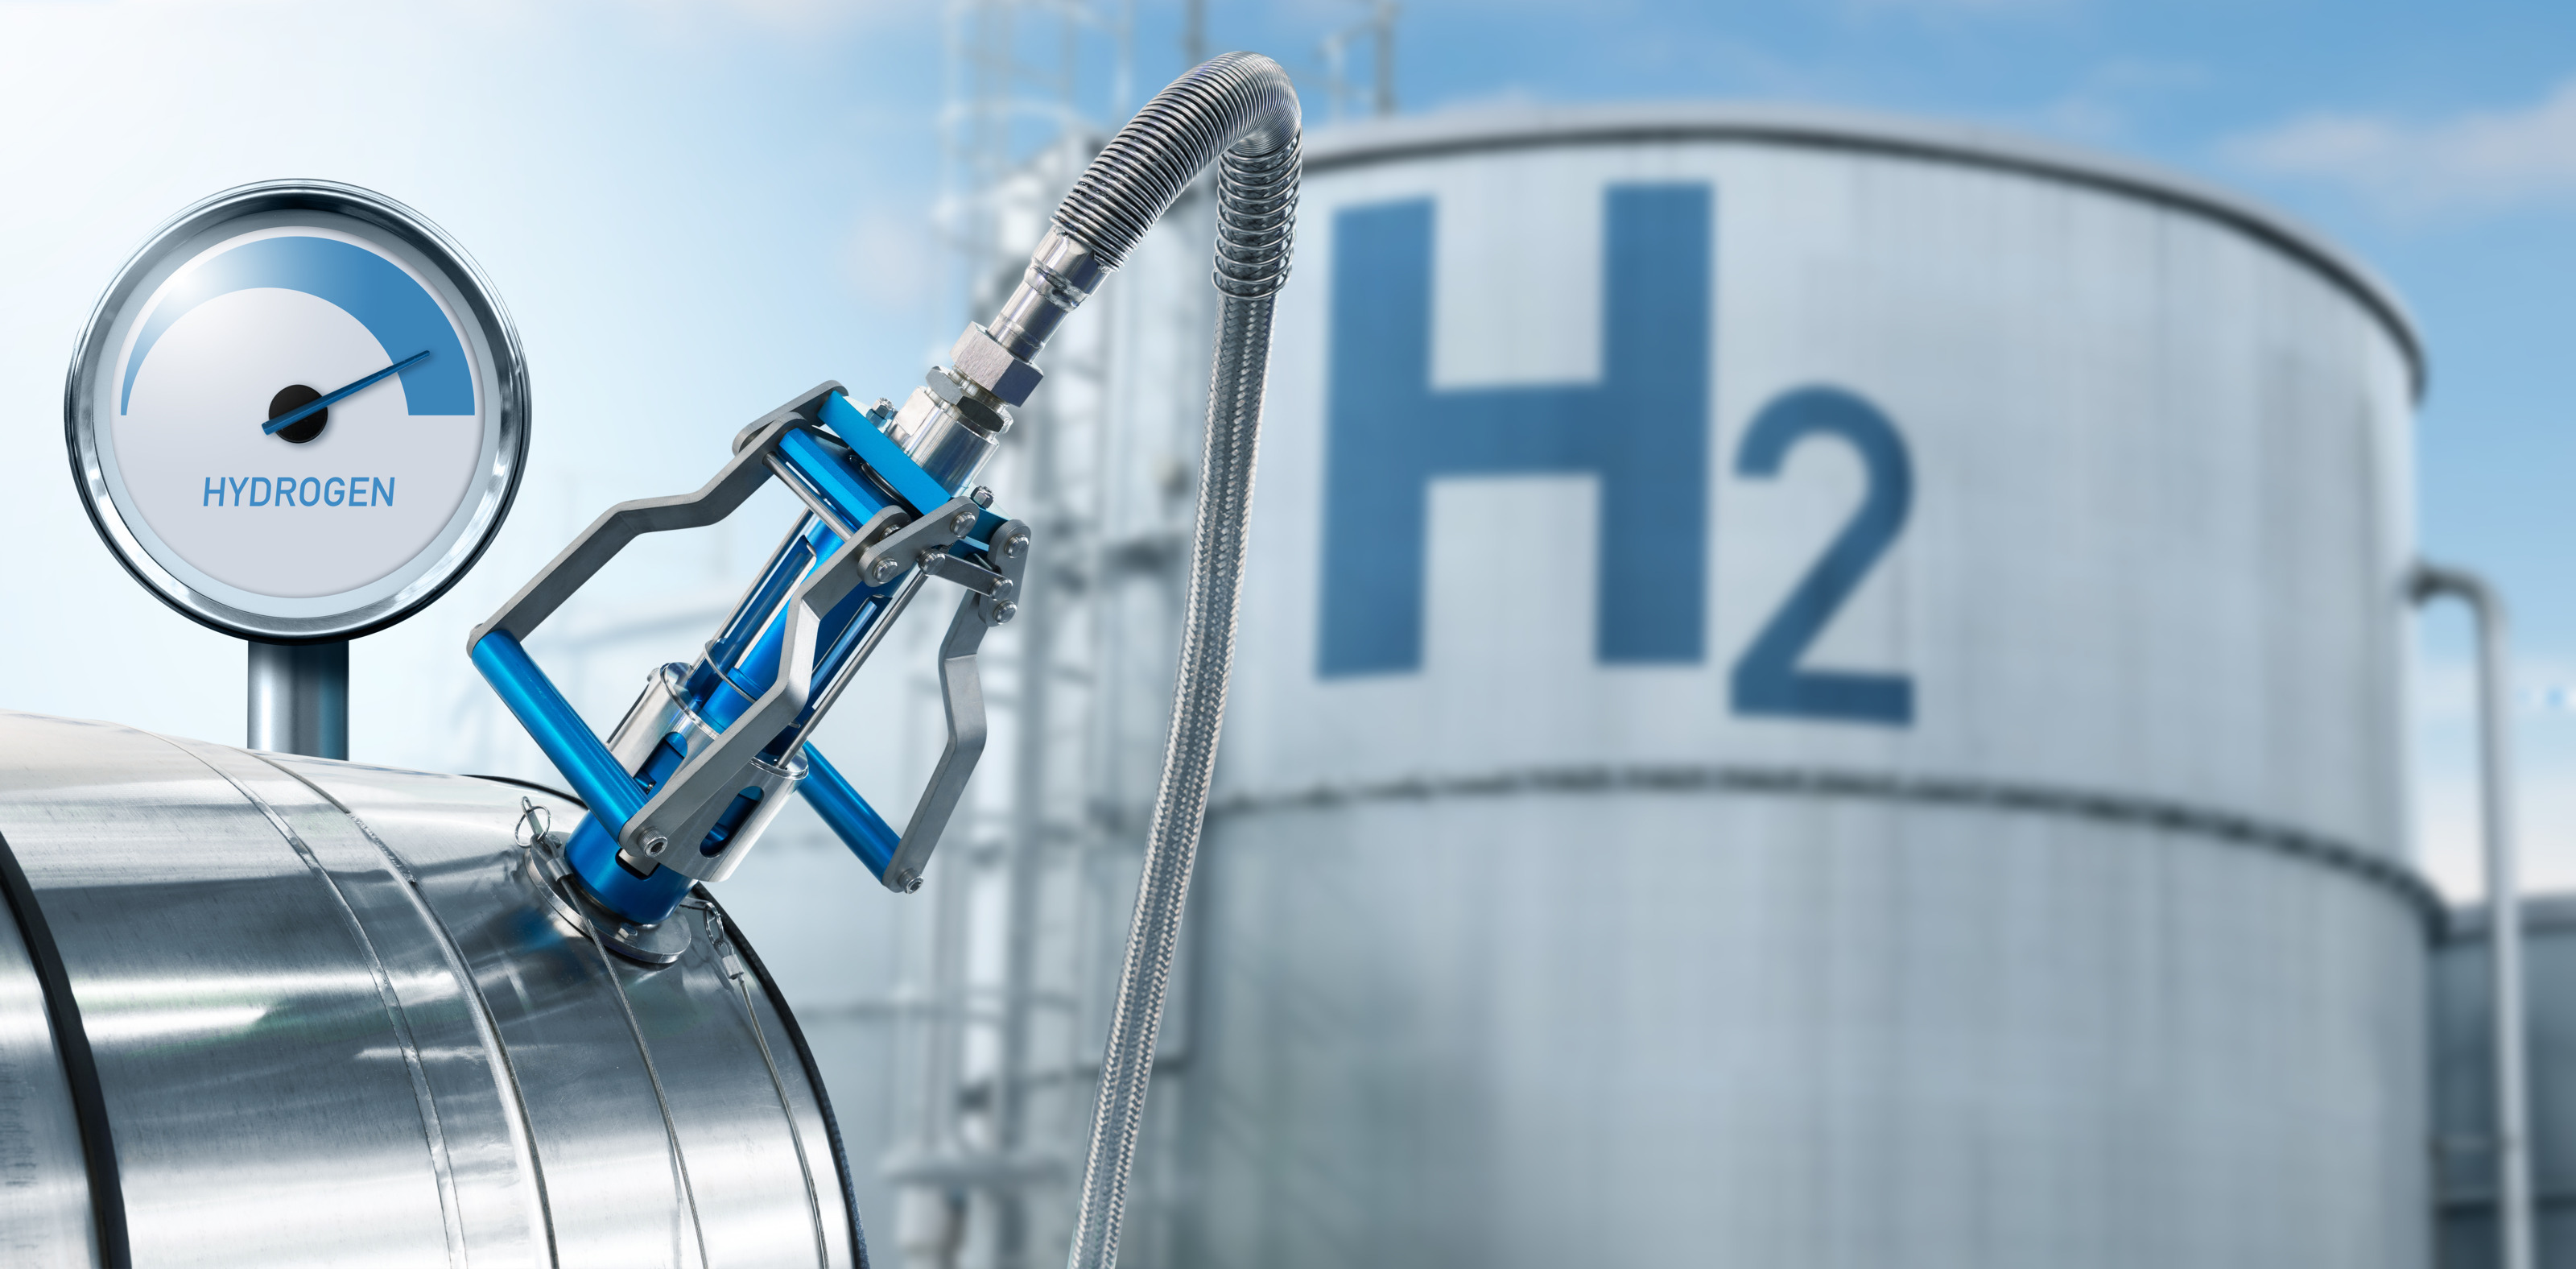 Fokus auf Zapfhahn einer Wasserstoffanlage mit Druckanzeige, im Hintergrund großer Container mit Beschriftung H2